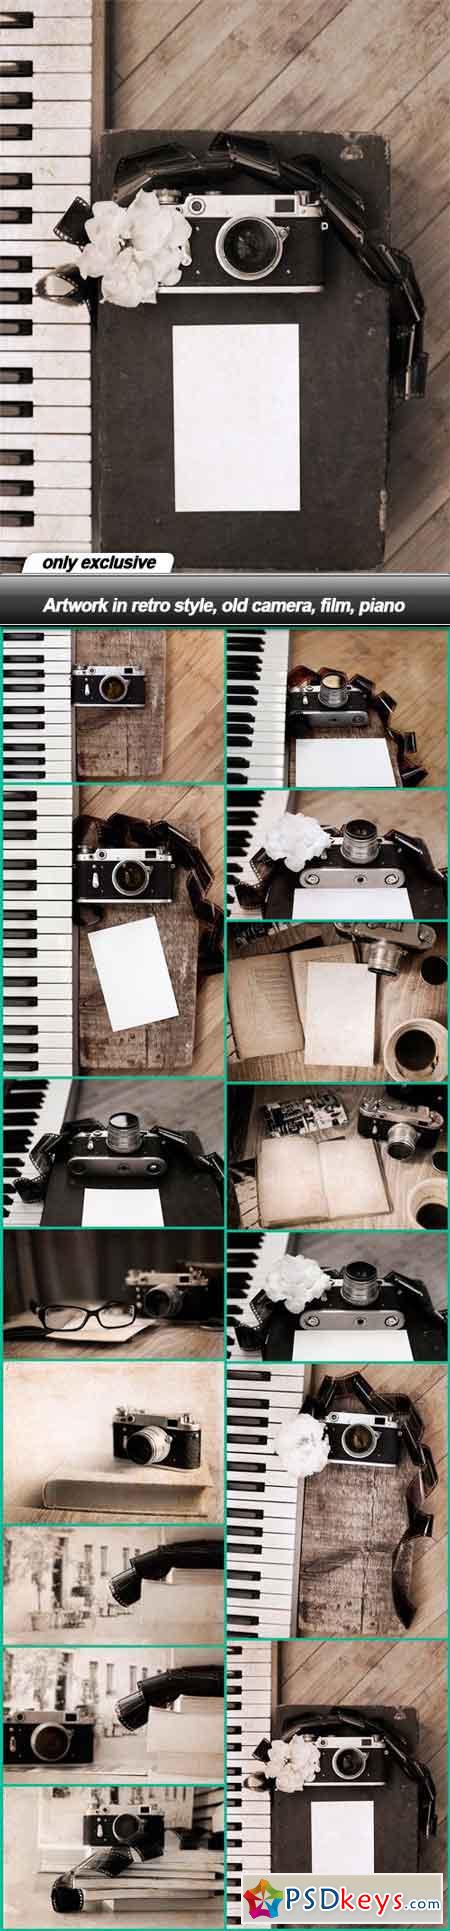 Artwork in retro style, old camera, film, piano - 15 UHQ JPEG